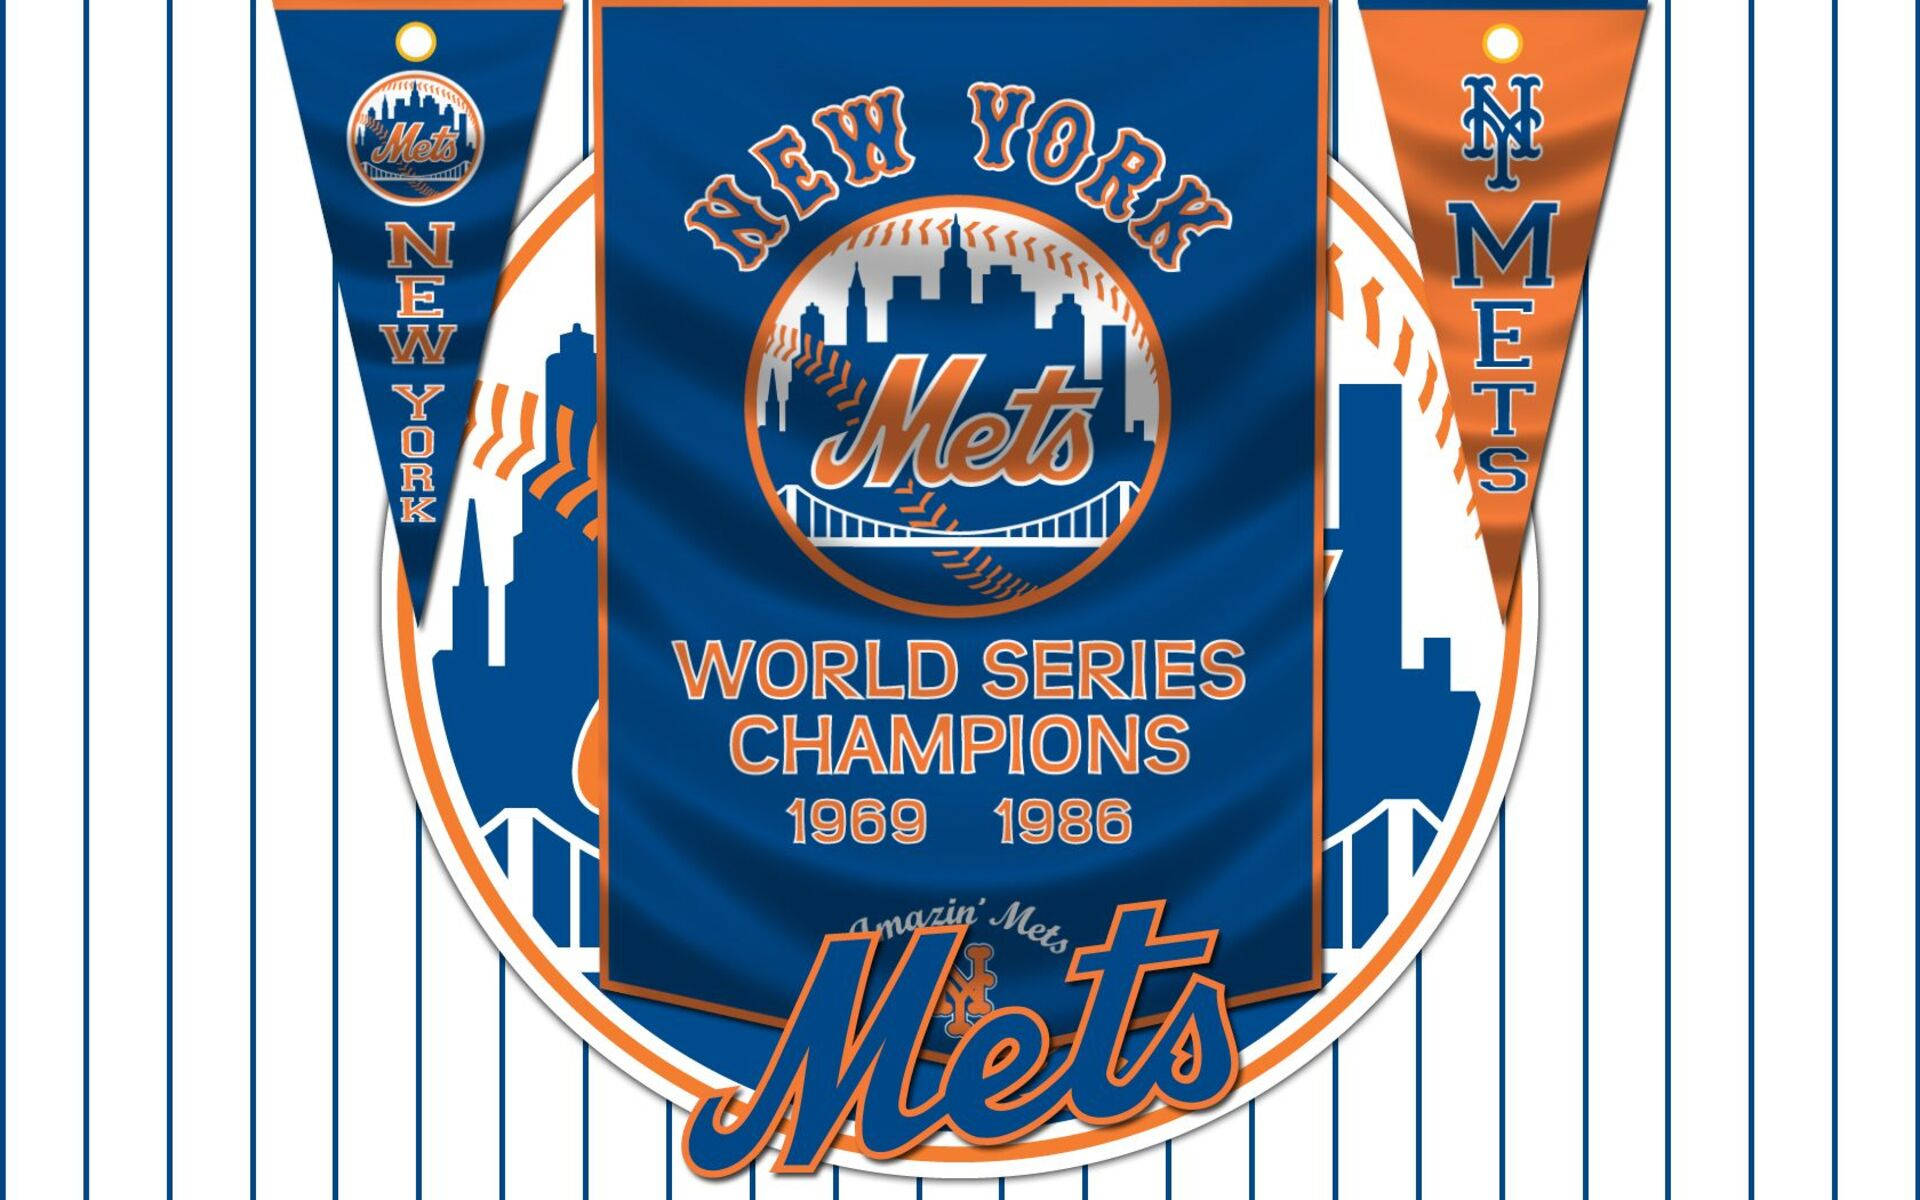 27 New York Mets Wallpapers  WallpaperSafari